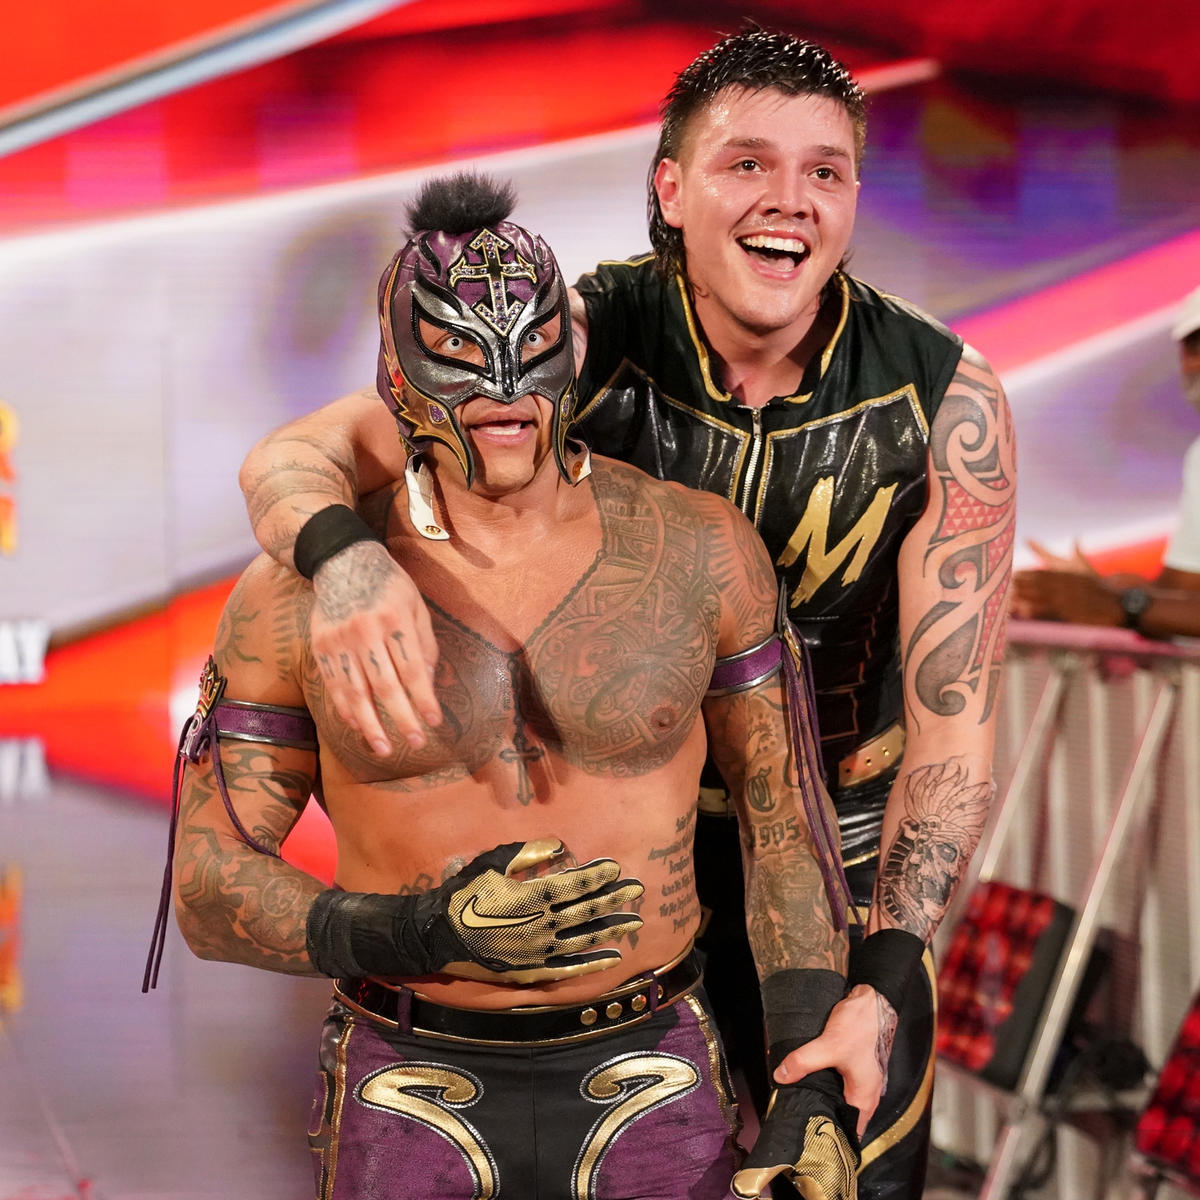 息子ドミニク・ミステリオ（右）と組み、サマースラム大会でノーDQ形式タッグ戦に臨むレイ・ミステリオJr．（C）2022 WWE, Inc. All Rights Reserved.